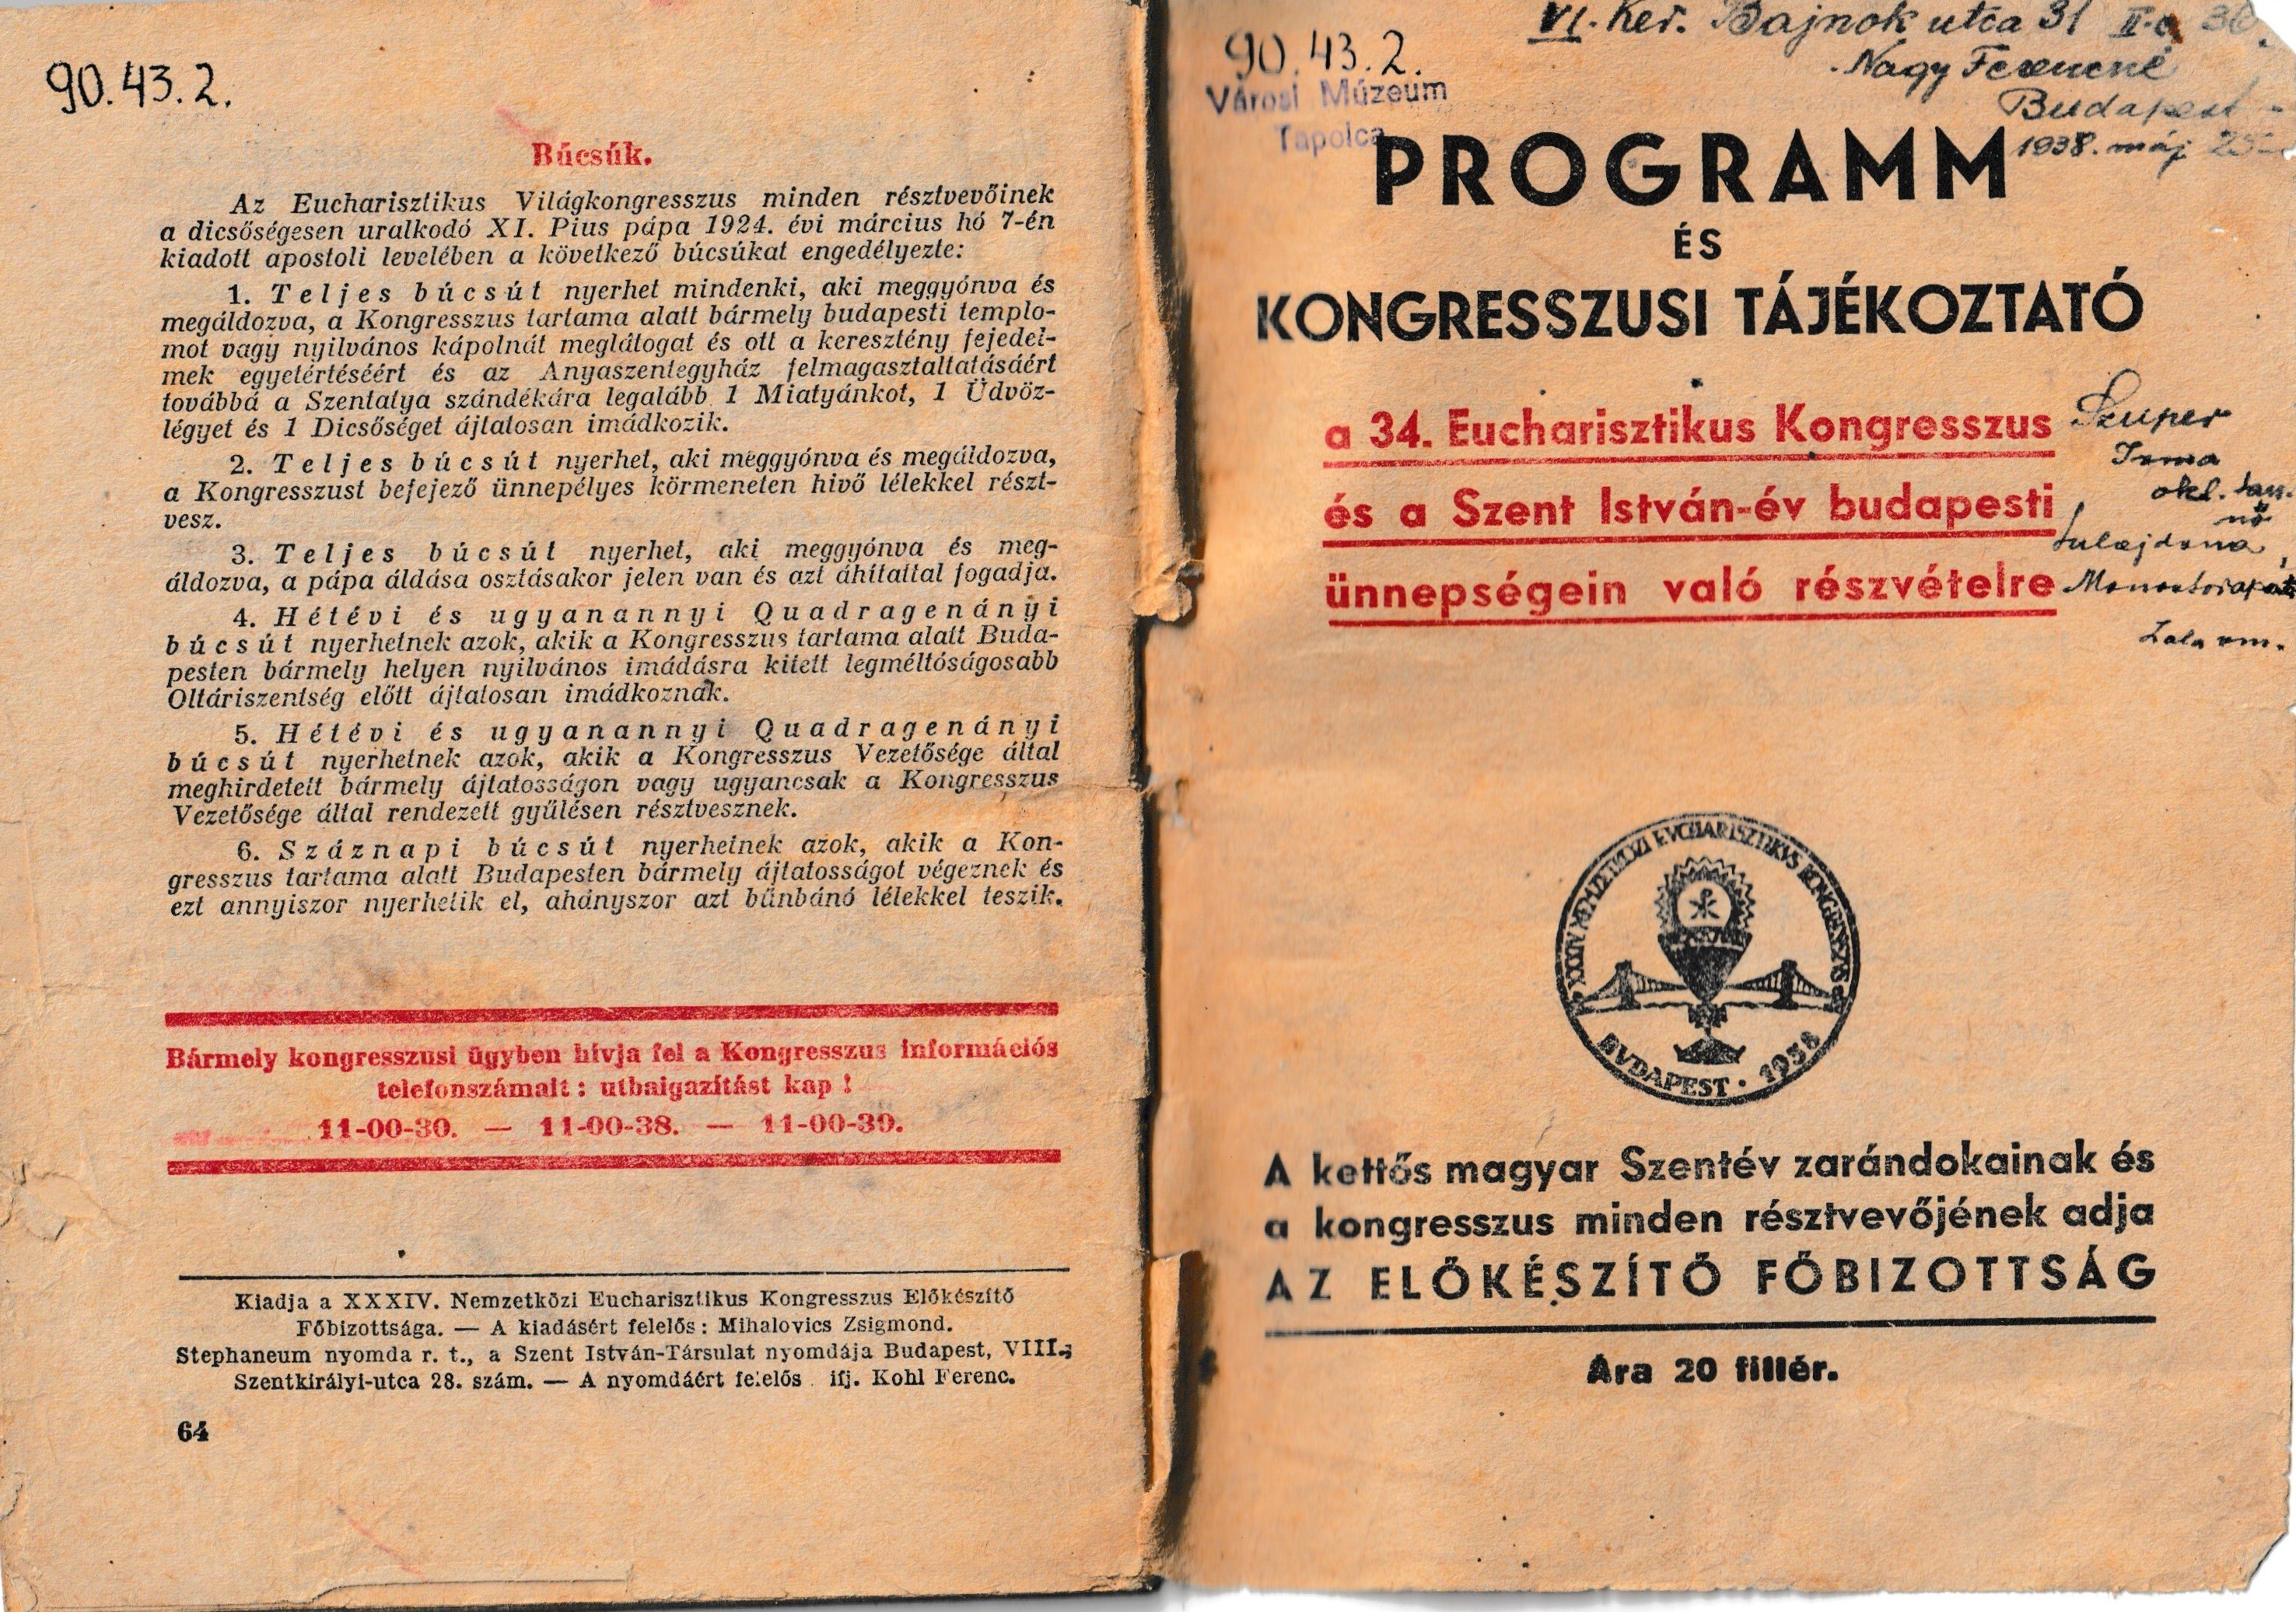 Az eucharisztikus kongresszus és a Szent István-év programfüzete, tájékoztatója (Tapolcai Városi Múzeum CC BY-NC-SA)